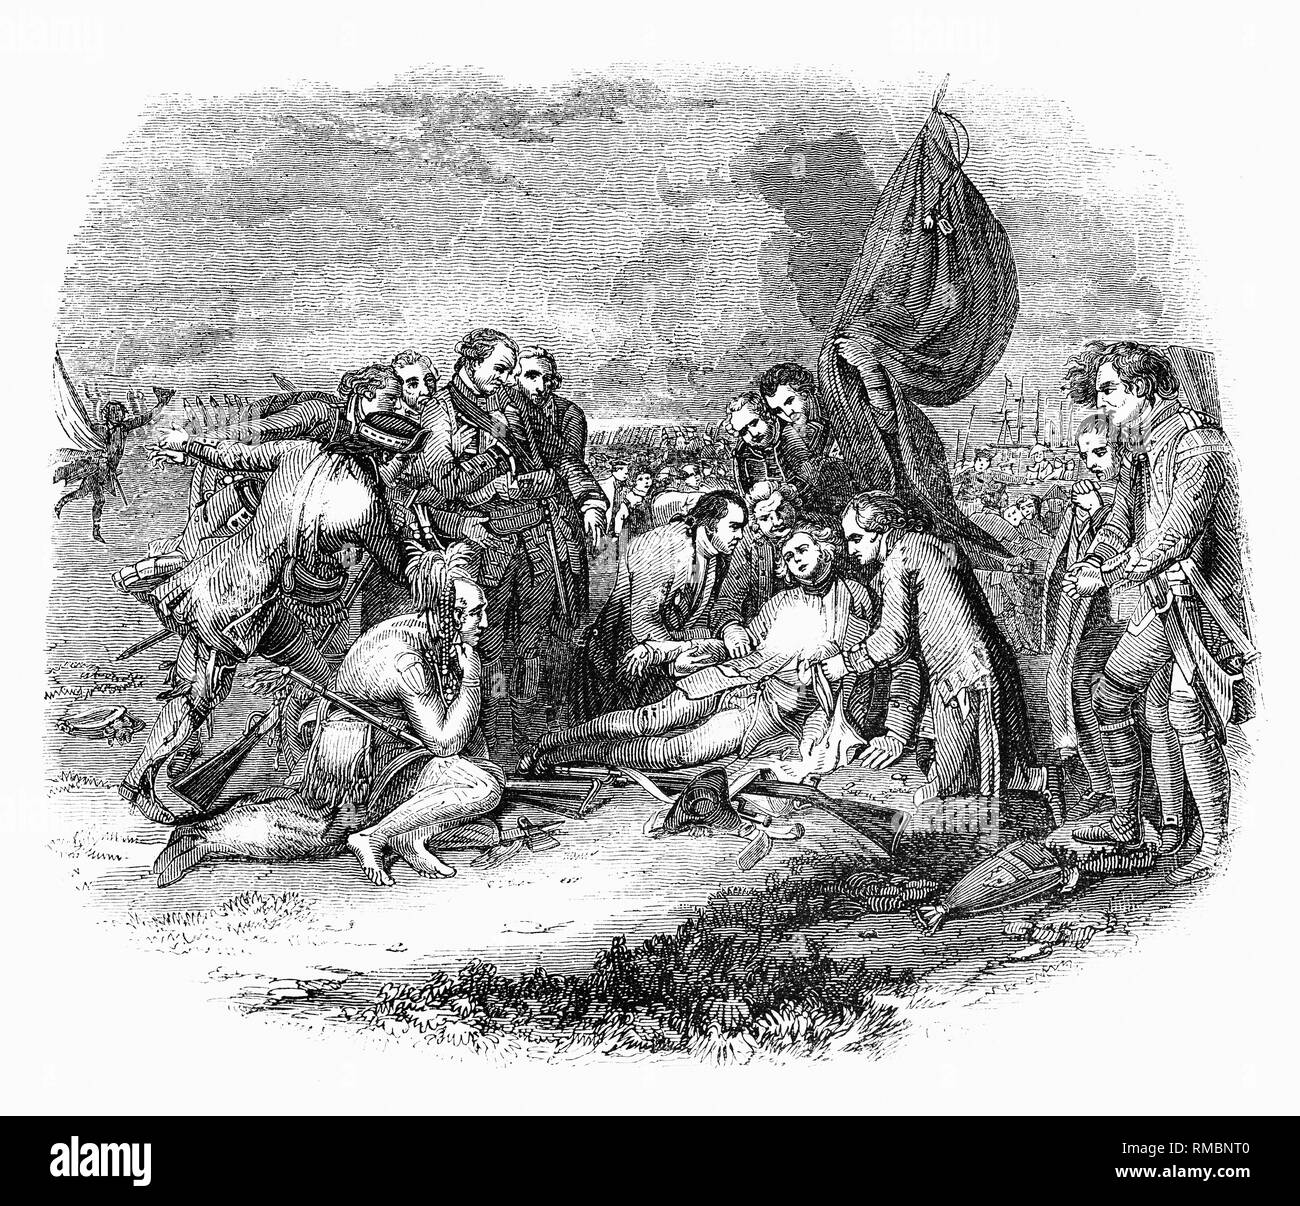 Un dibujo a partir de la muerte del General Wolfe, un conocido 1770 pintado por el artista angloamericano Benjamin West representando la muerte del General británico James Wolfe en la Batalla de Quebec 1759 durante la guerra francesa y de indio. La Batalla de Quebec, también conocida como la Batalla de las Llanuras de Abraham, el 13 de septiembre de 1759 fue un acontecimiento decisivo en la guerra de los siete años y decidió la suerte de las colonias de Francia en América del Norte. La batalla se libró entre el ejército británico y el ejército francés; la encarnizada lucha duró sólo quince minutos. El ejército británico estaba comandado por el General Wolfe. Aunque su Foto de stock